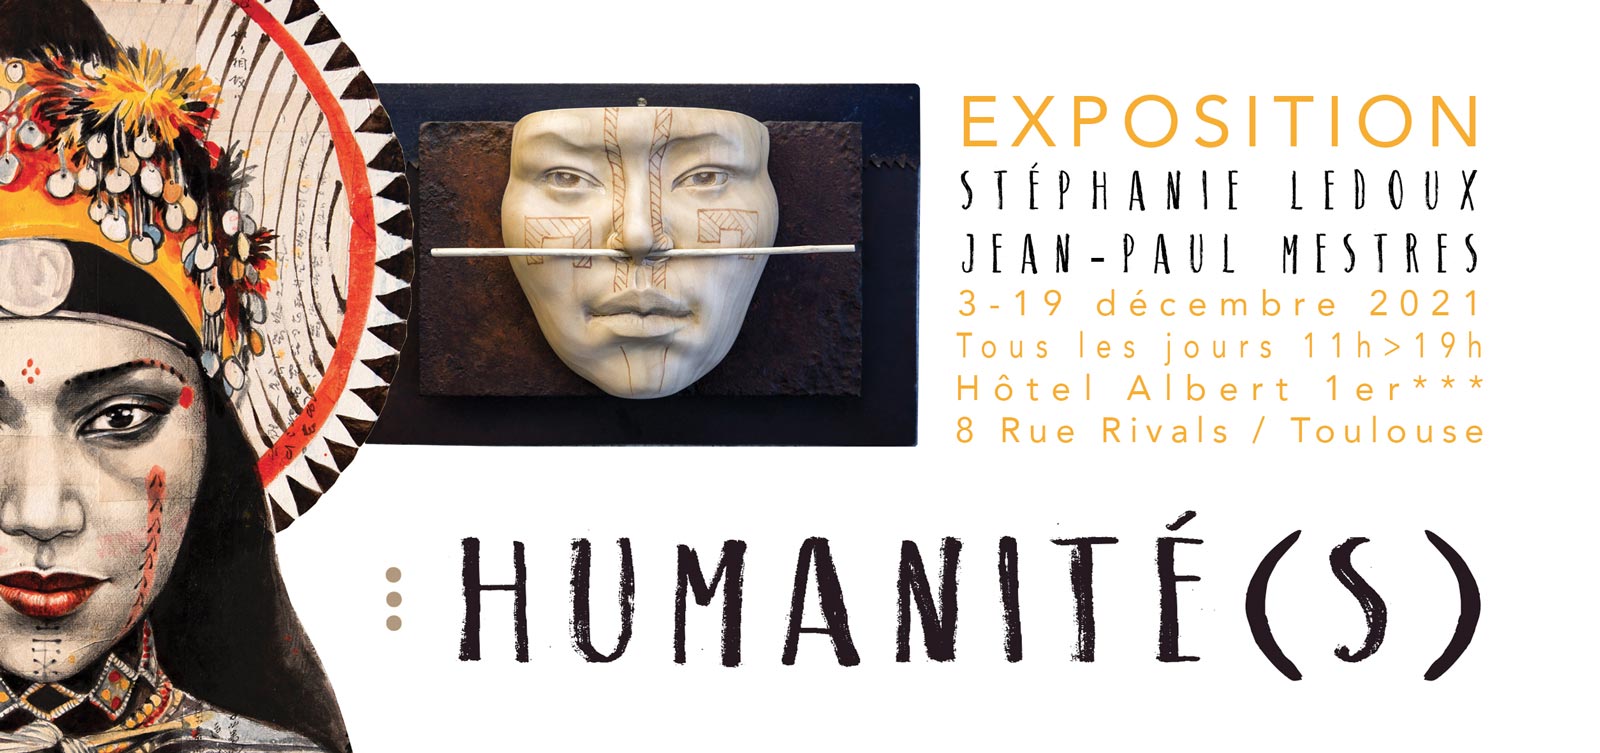 Expo Humanité(s) - Tout un Art